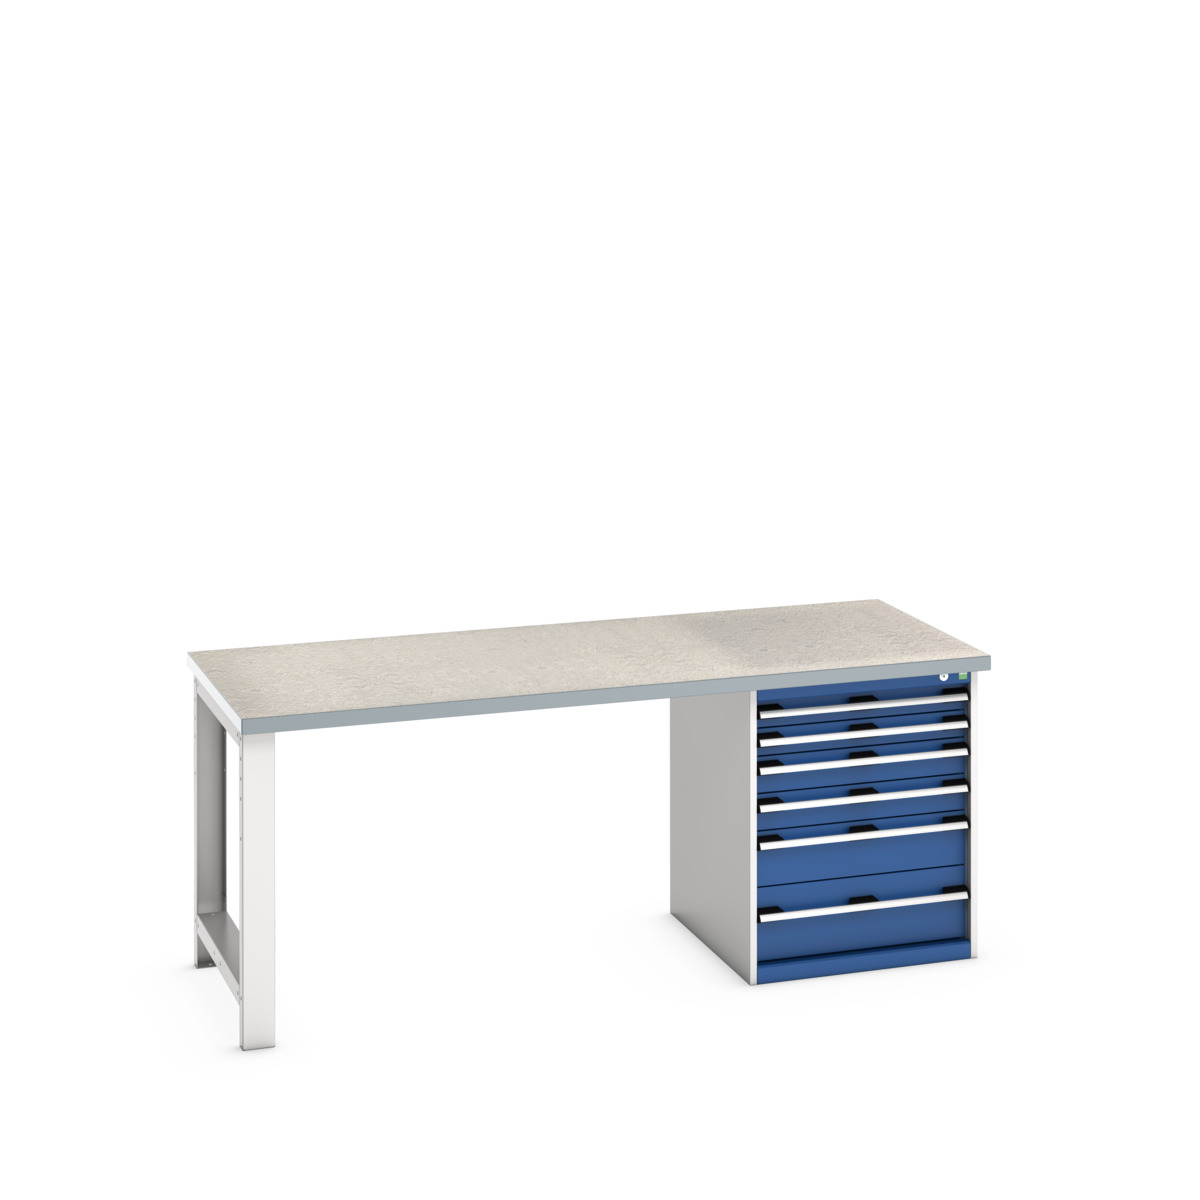 41004116.11V - cubio pedestal bench (lino)